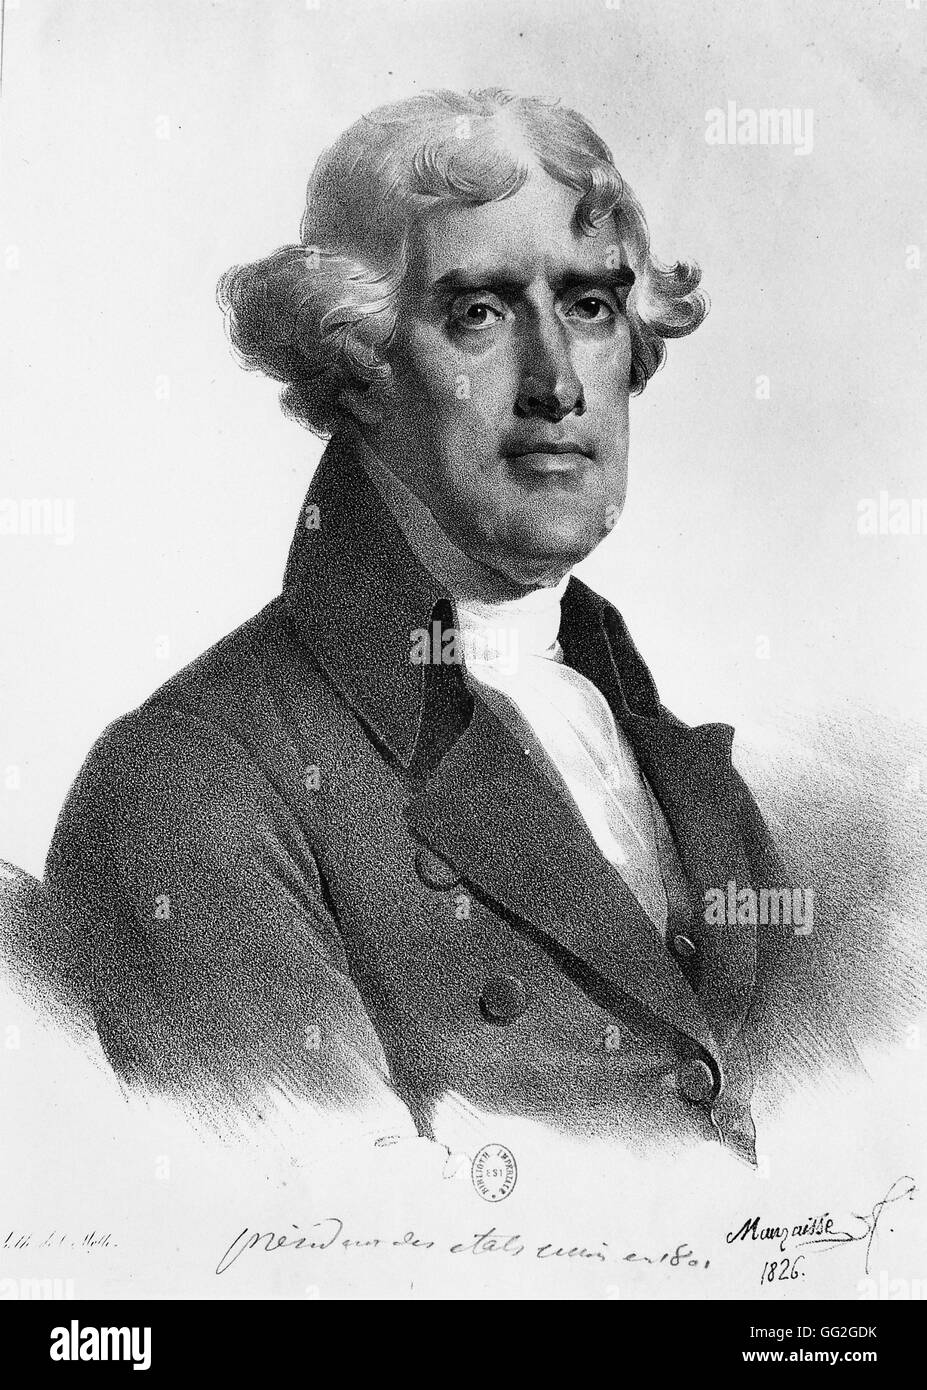 Mauraisse scuola francese Ritratto di Thomas Jefferson, Presidente degli Stati Uniti d'America dal 1801 al 1809. 1826 Litografia Foto Stock